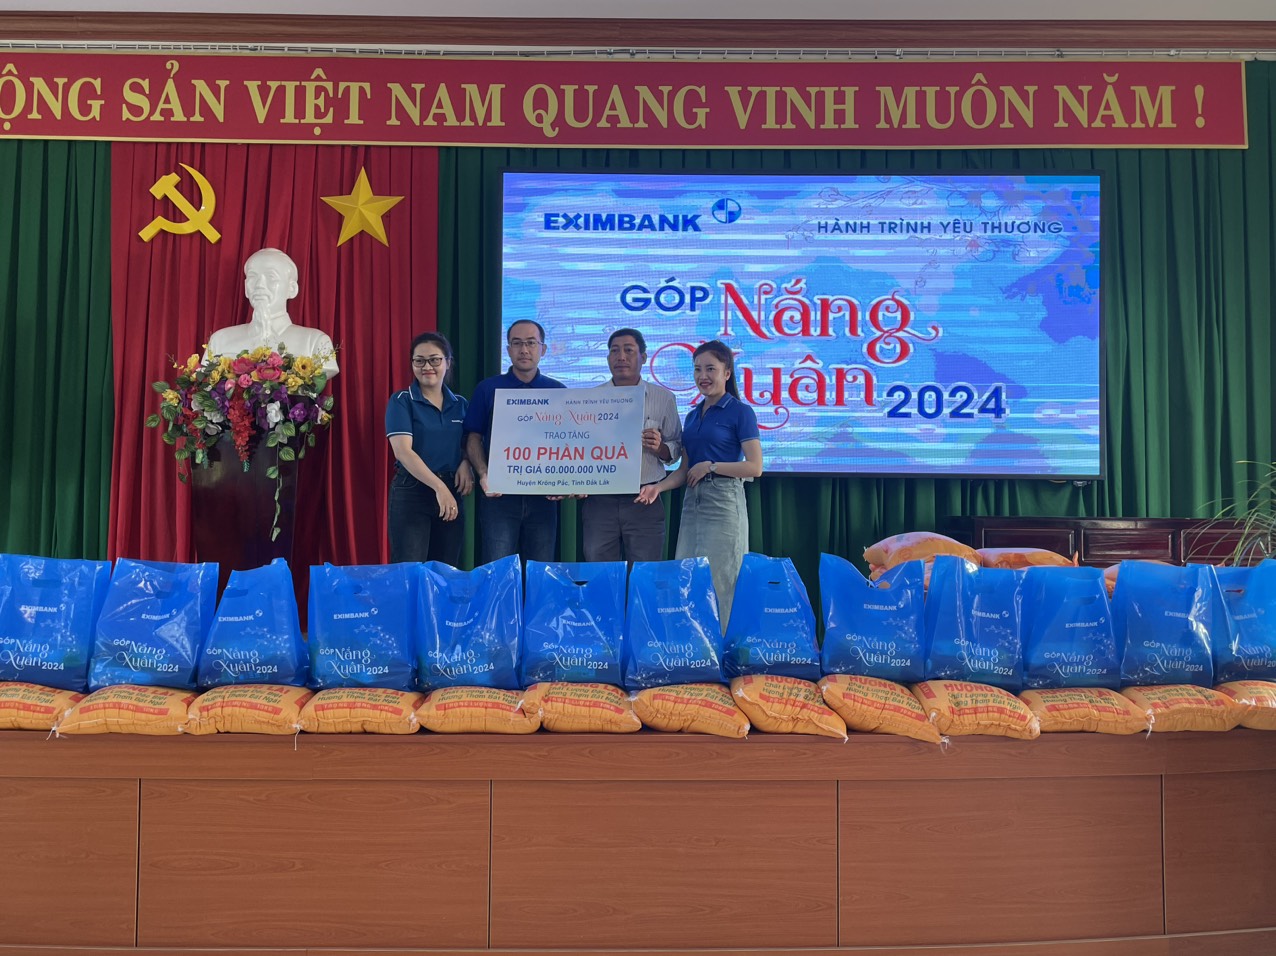 Ngân hàng Eximbank chi nhánh Krông Pắc đã phối hợp với Ban vận động Tết nhân ái thị trấn Phước An tổ chức chương trình "Hành trình yêu thương, góp nắng xuân 2024" 